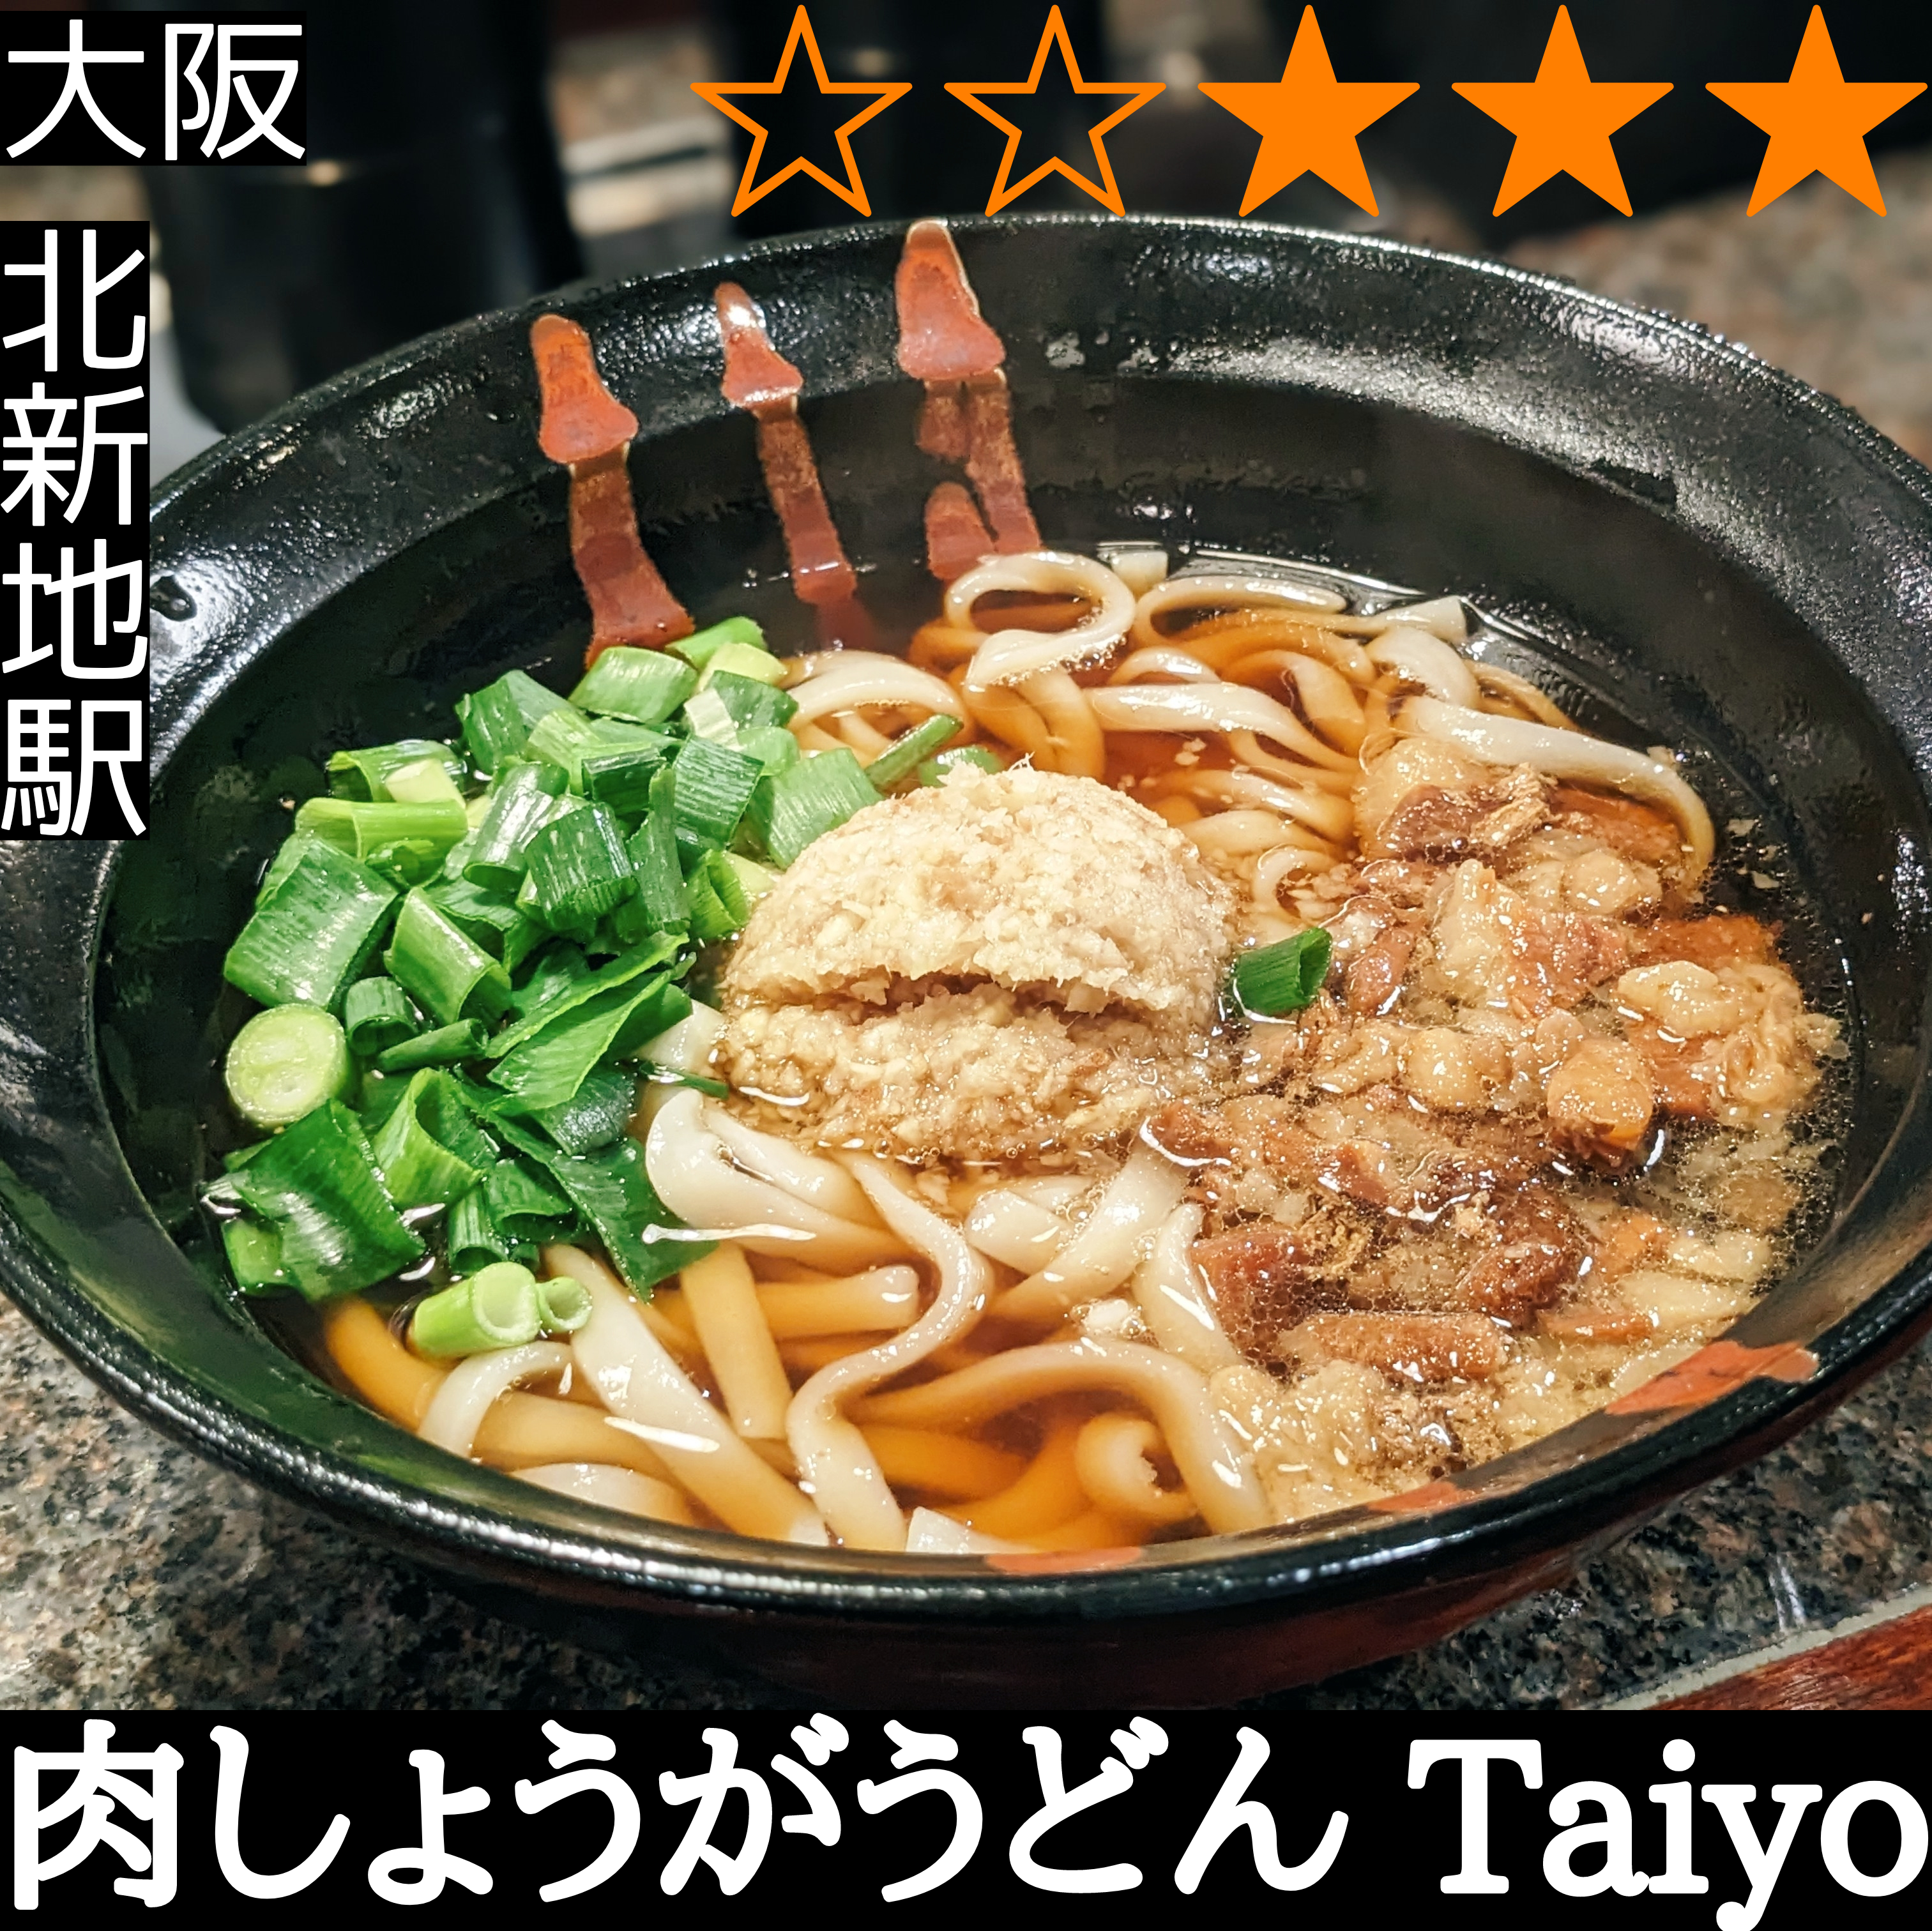 肉しょうがうどん Taiyo 北新地店(北新地駅・うどん) 